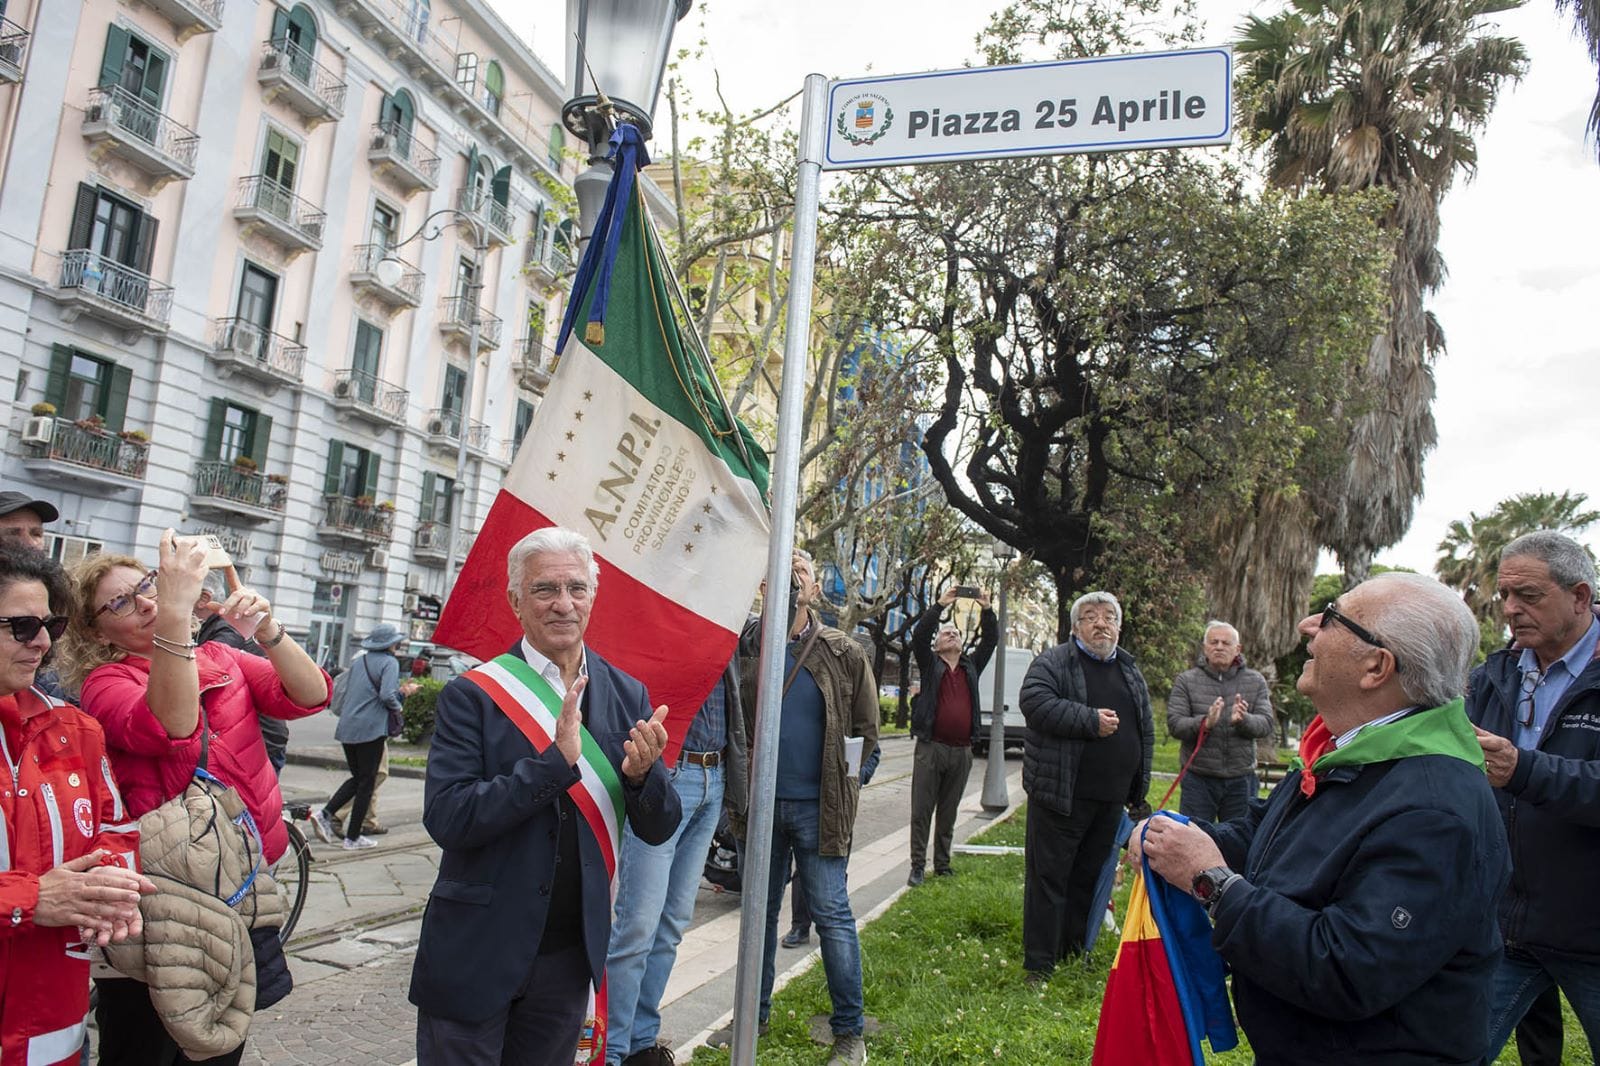 Salerno: 25 Aprile, Festeggiata Liberazione